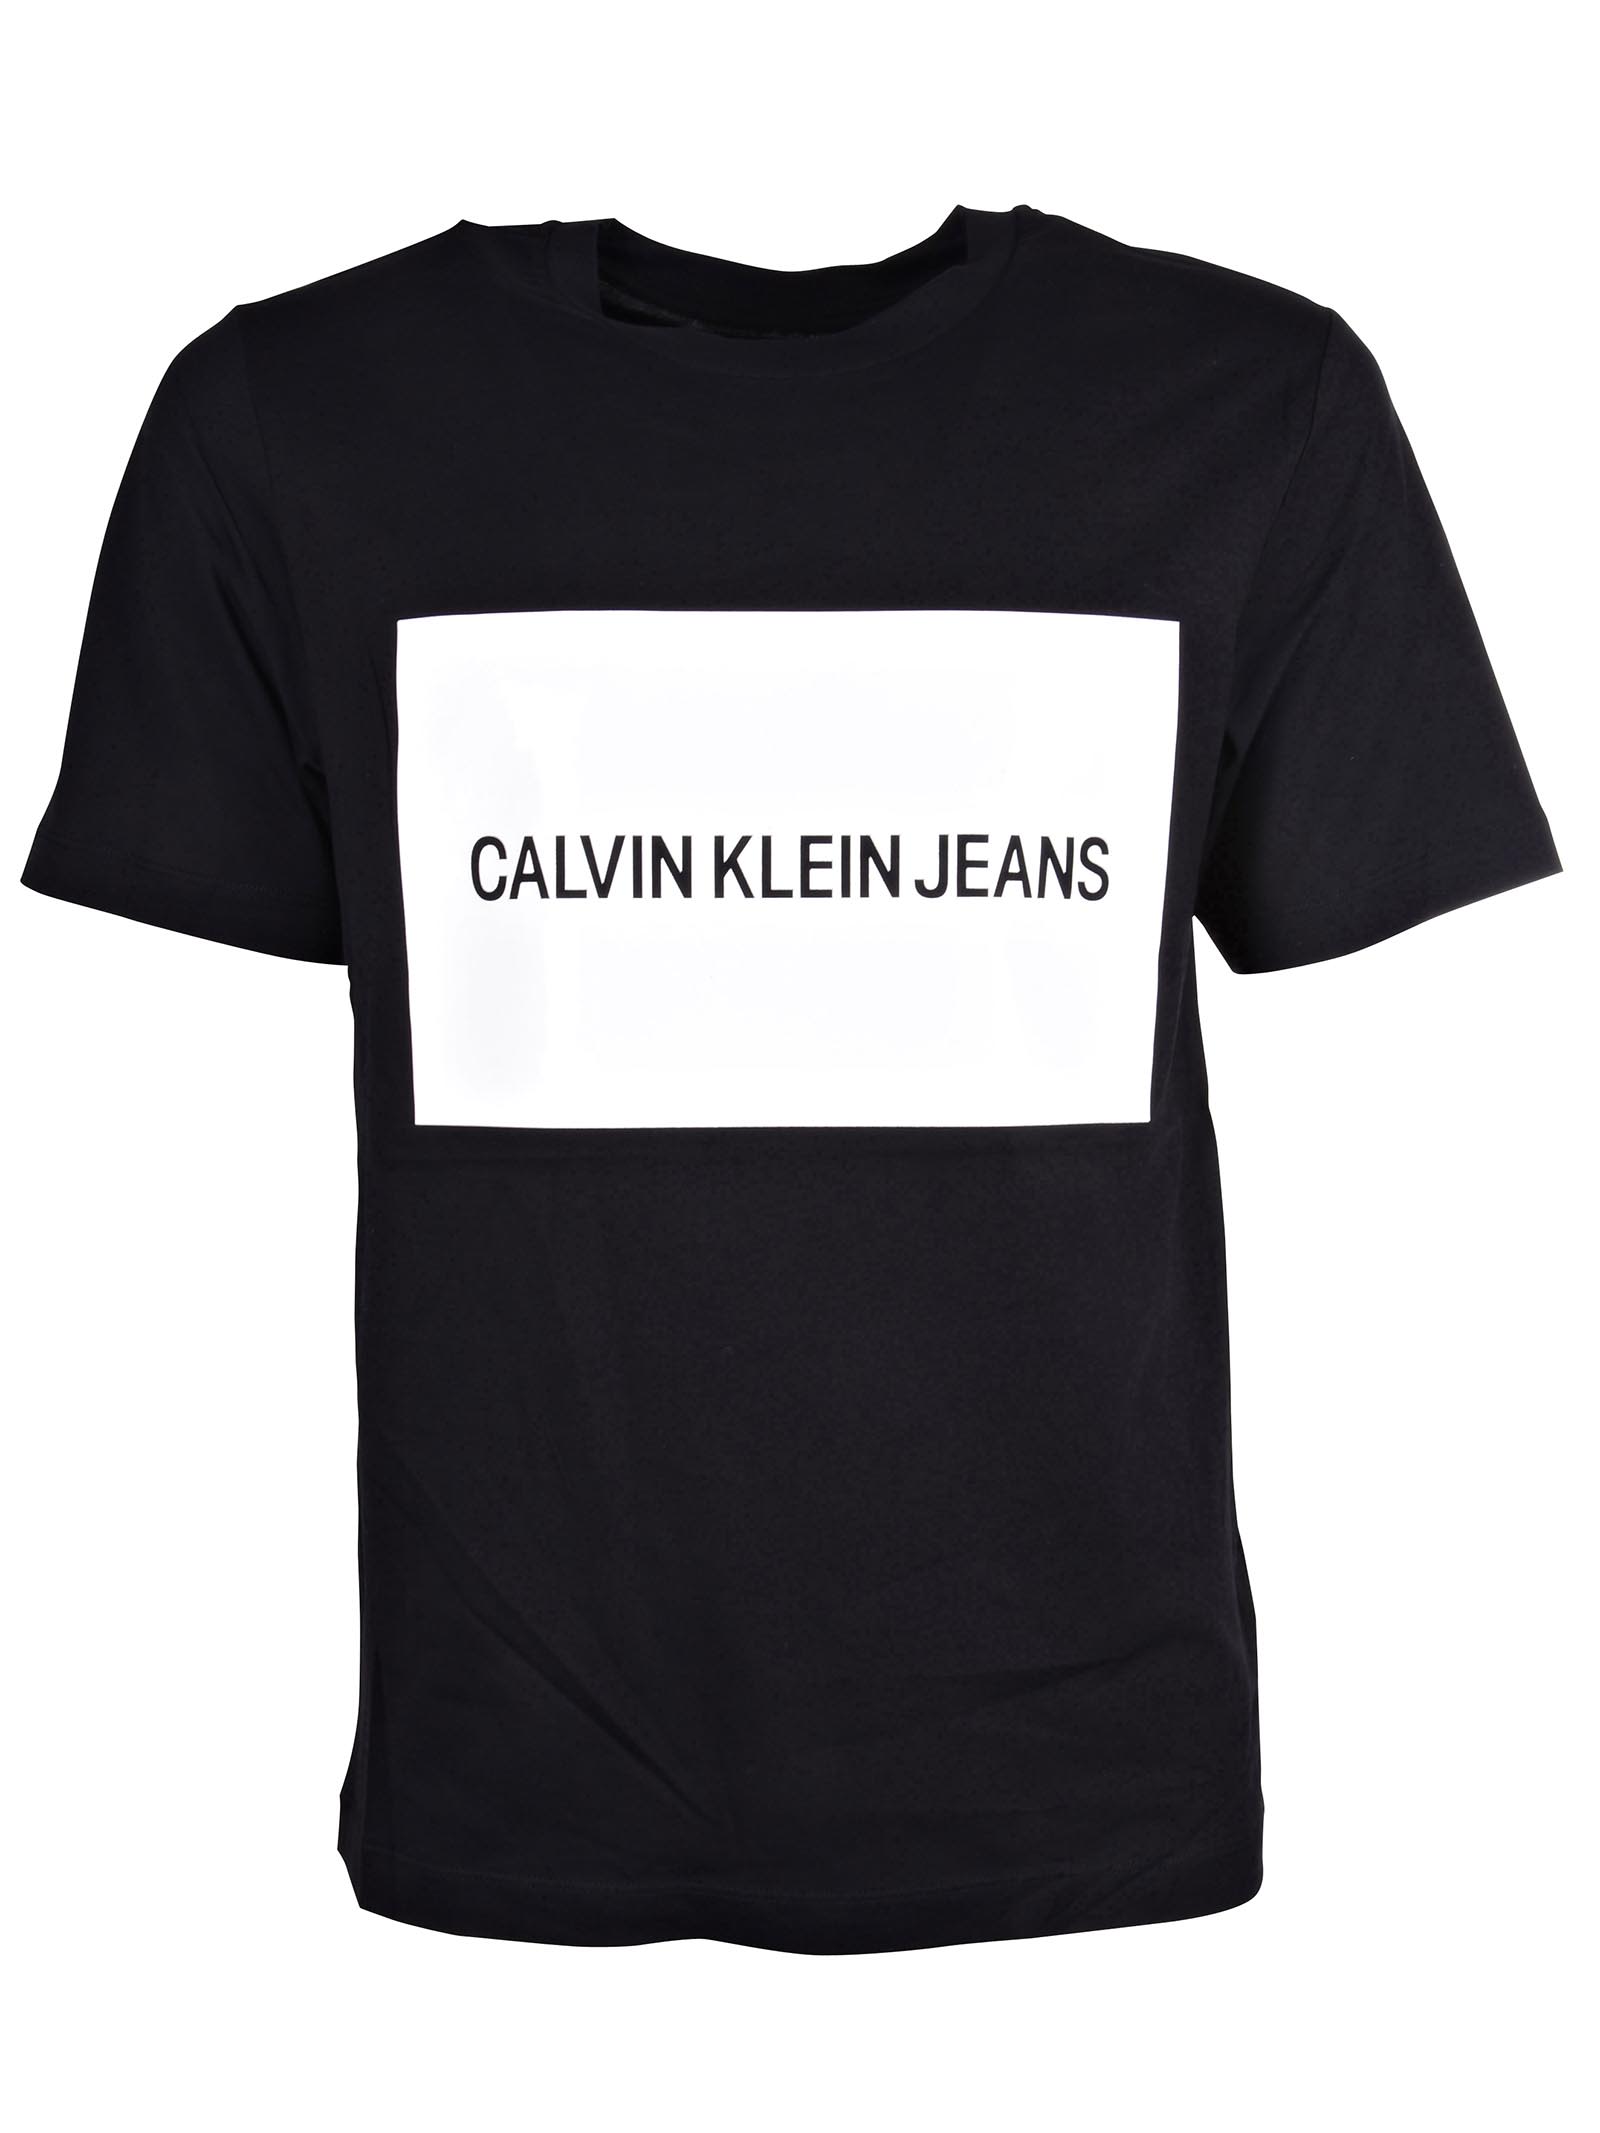 calvin klein shirts online india